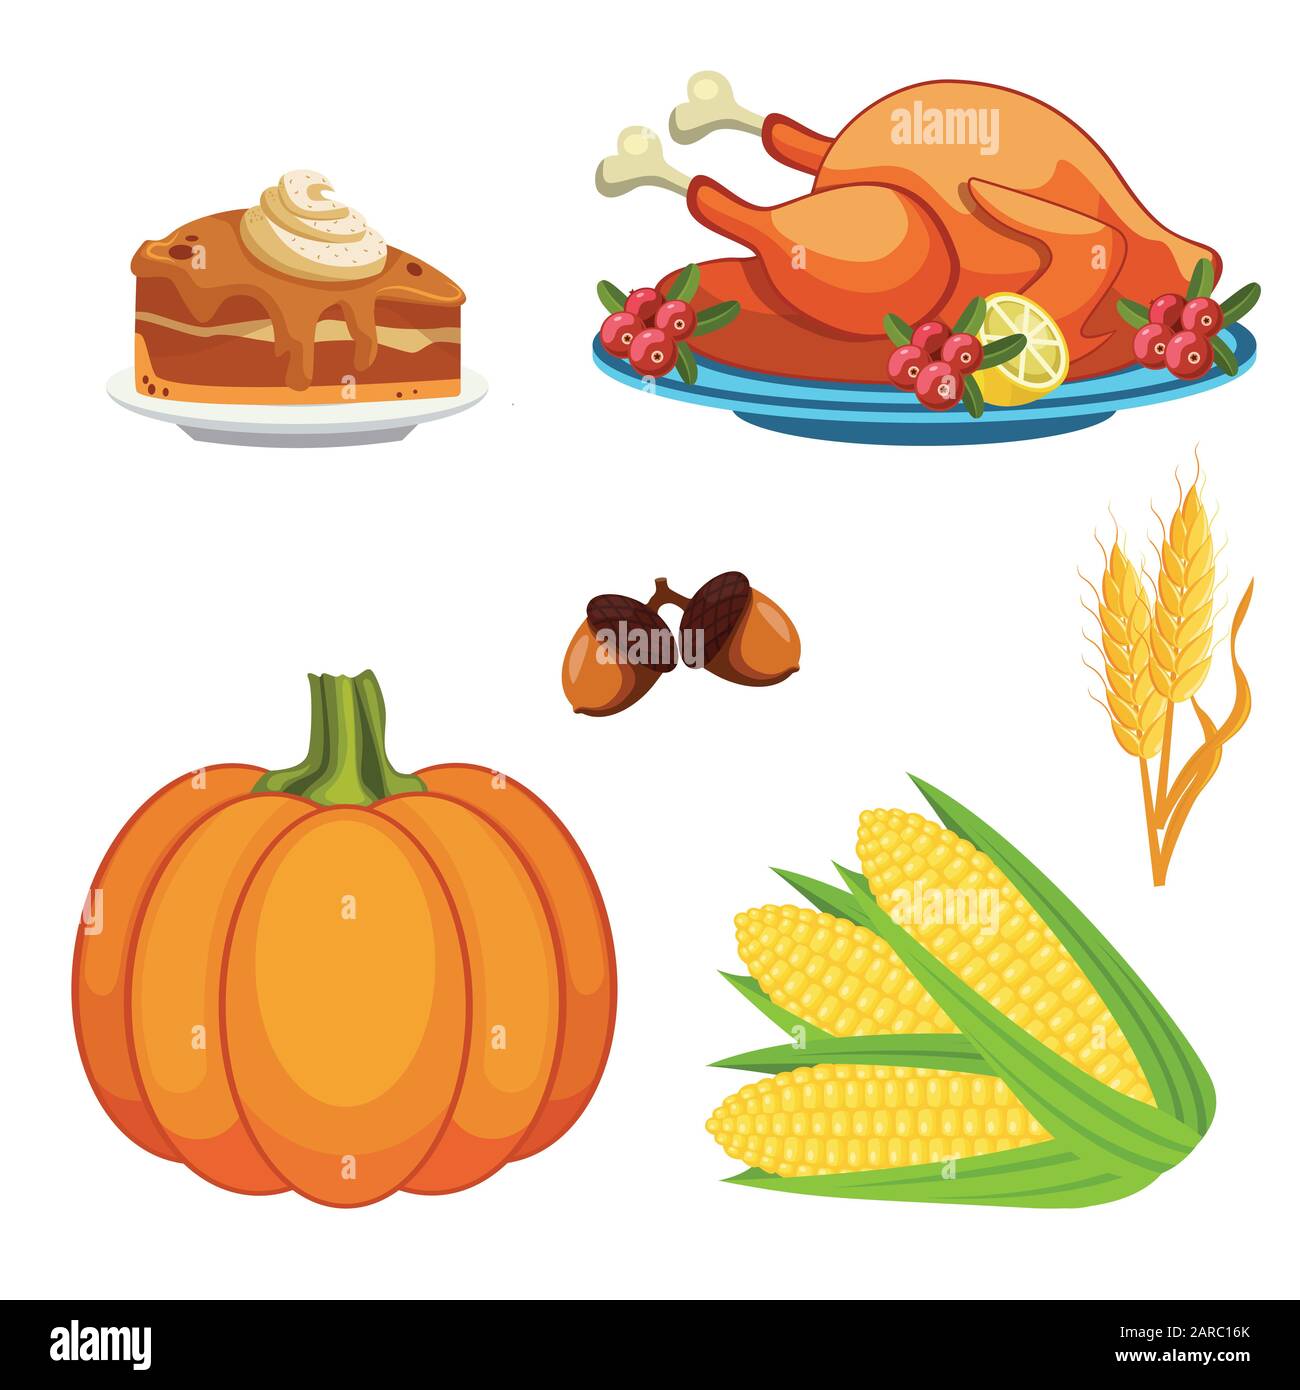 Icônes du jour de Thanksgiving définies. Tarte à la citrouille, citrouille, pommes de terre, blé, épis de maïs, dinde frite. Illustration vectorielle. Illustration de Vecteur